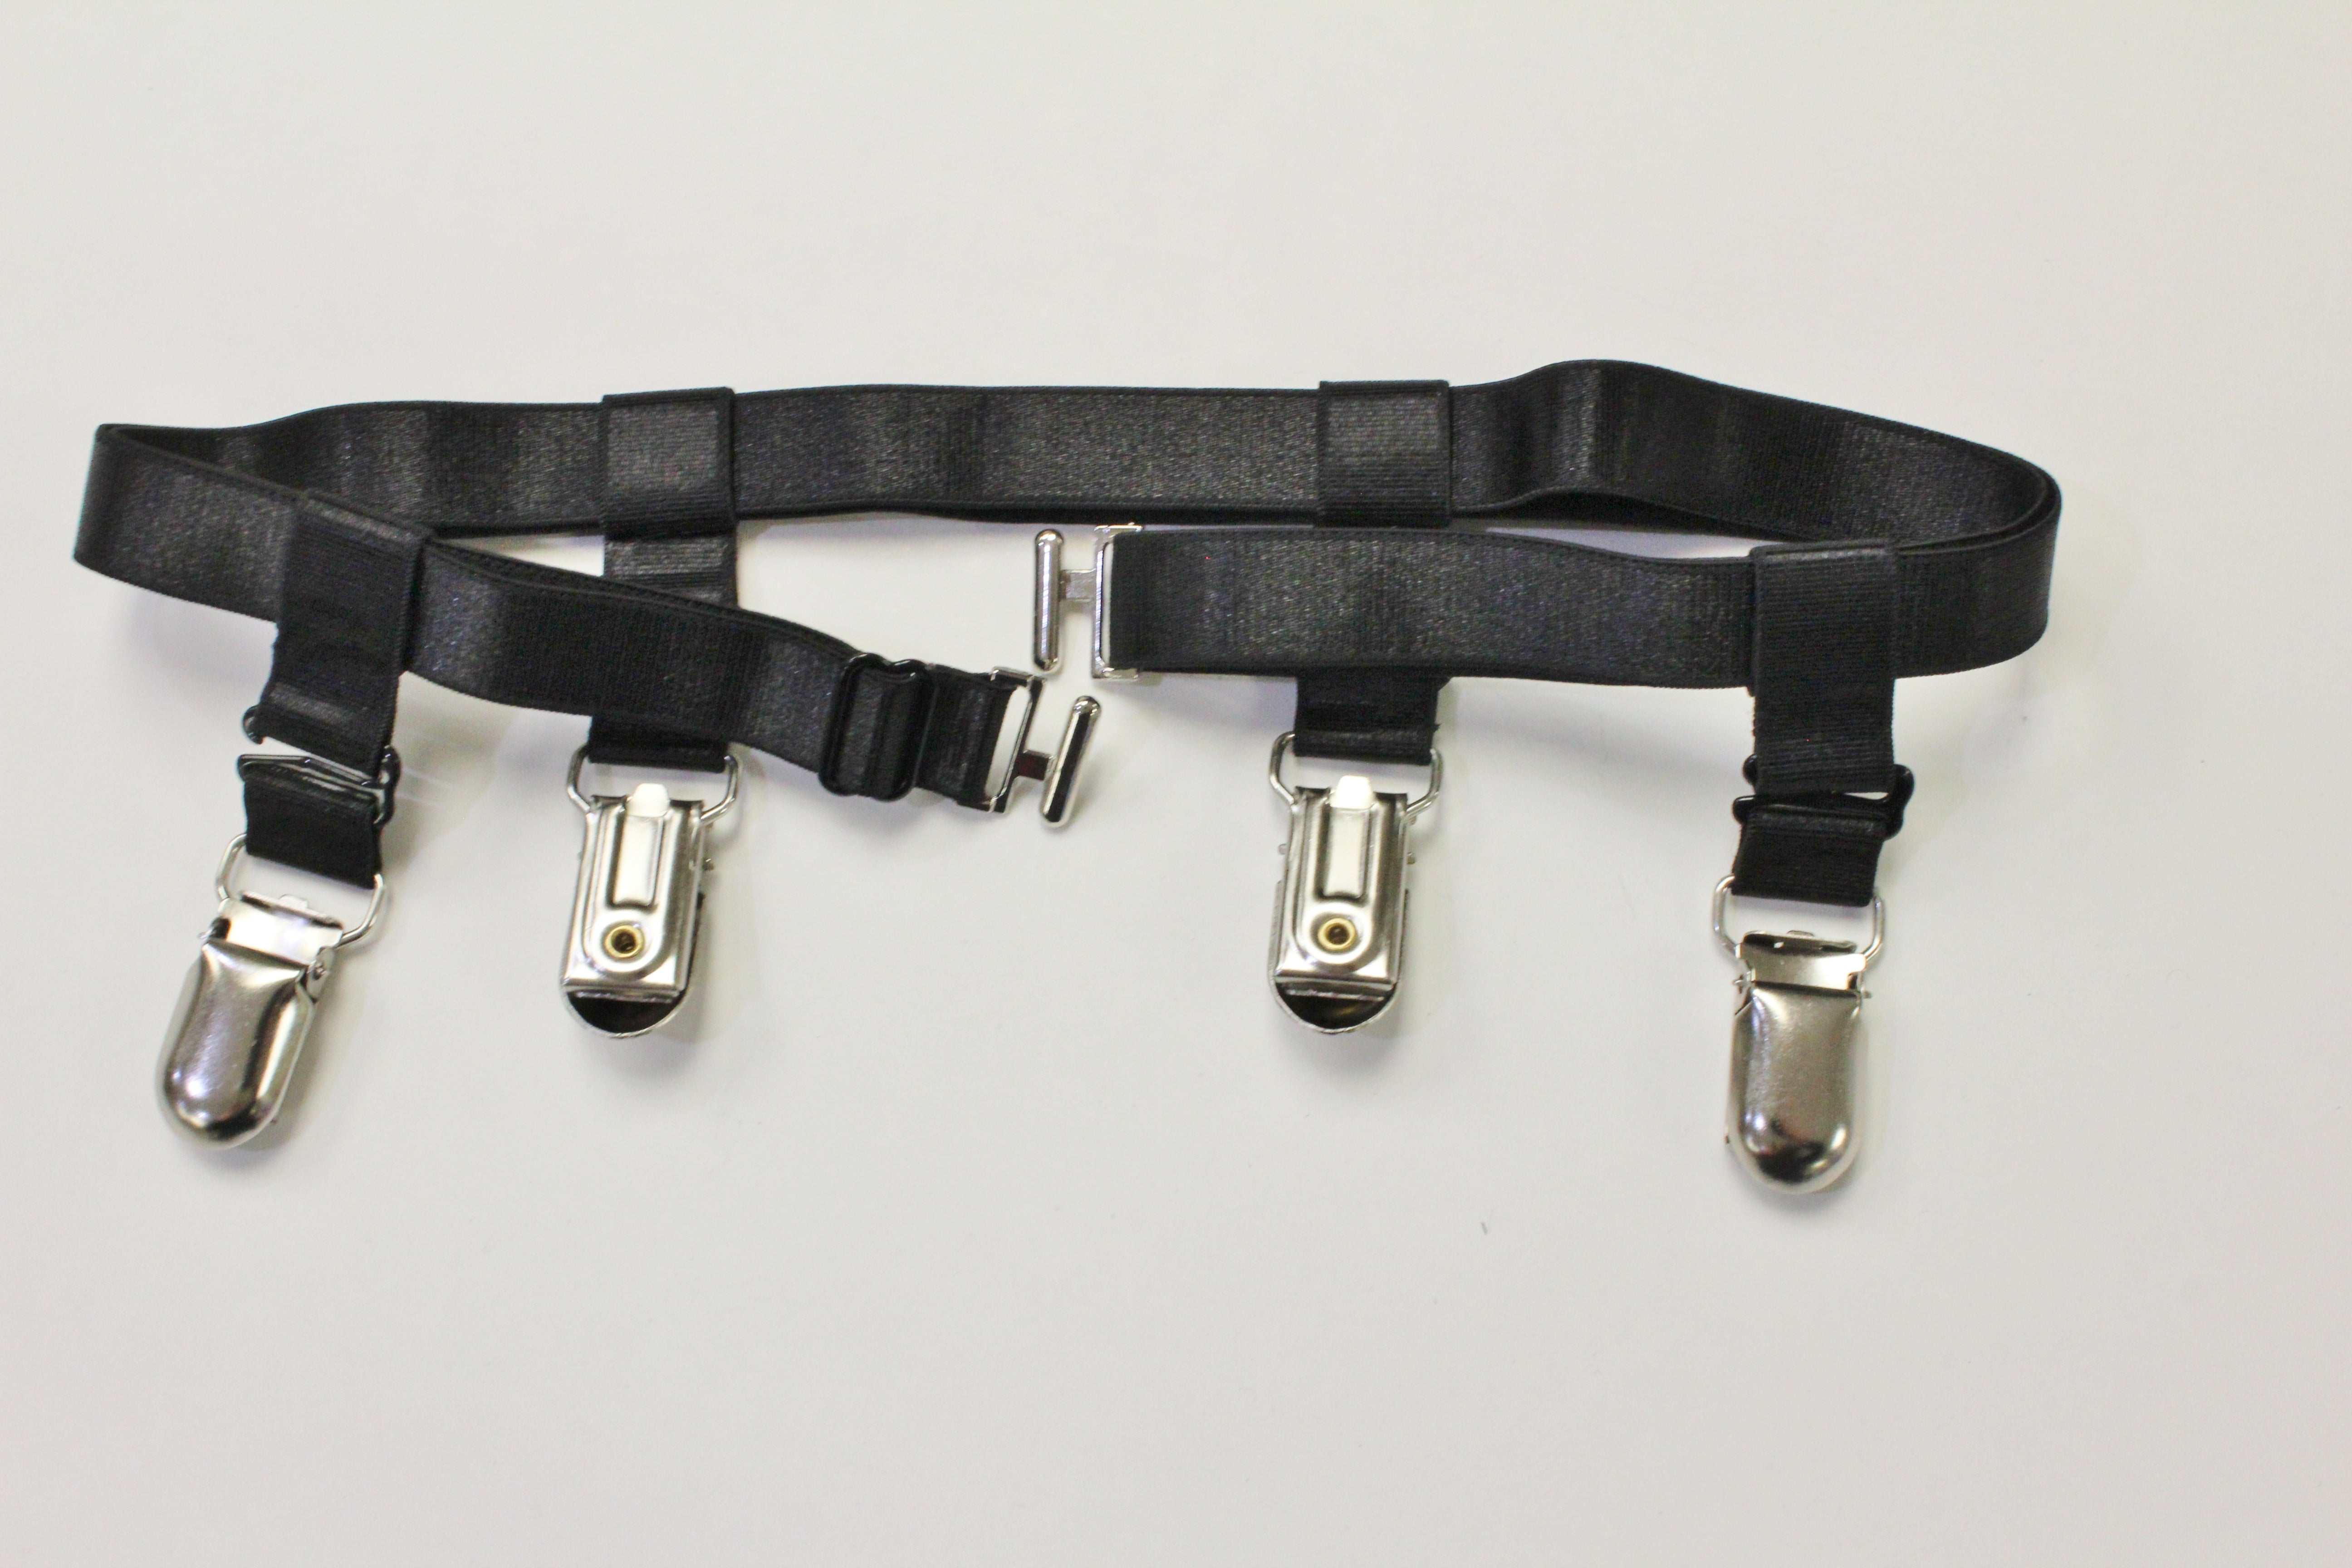 Thigh garter belt with 4 metal garter grips